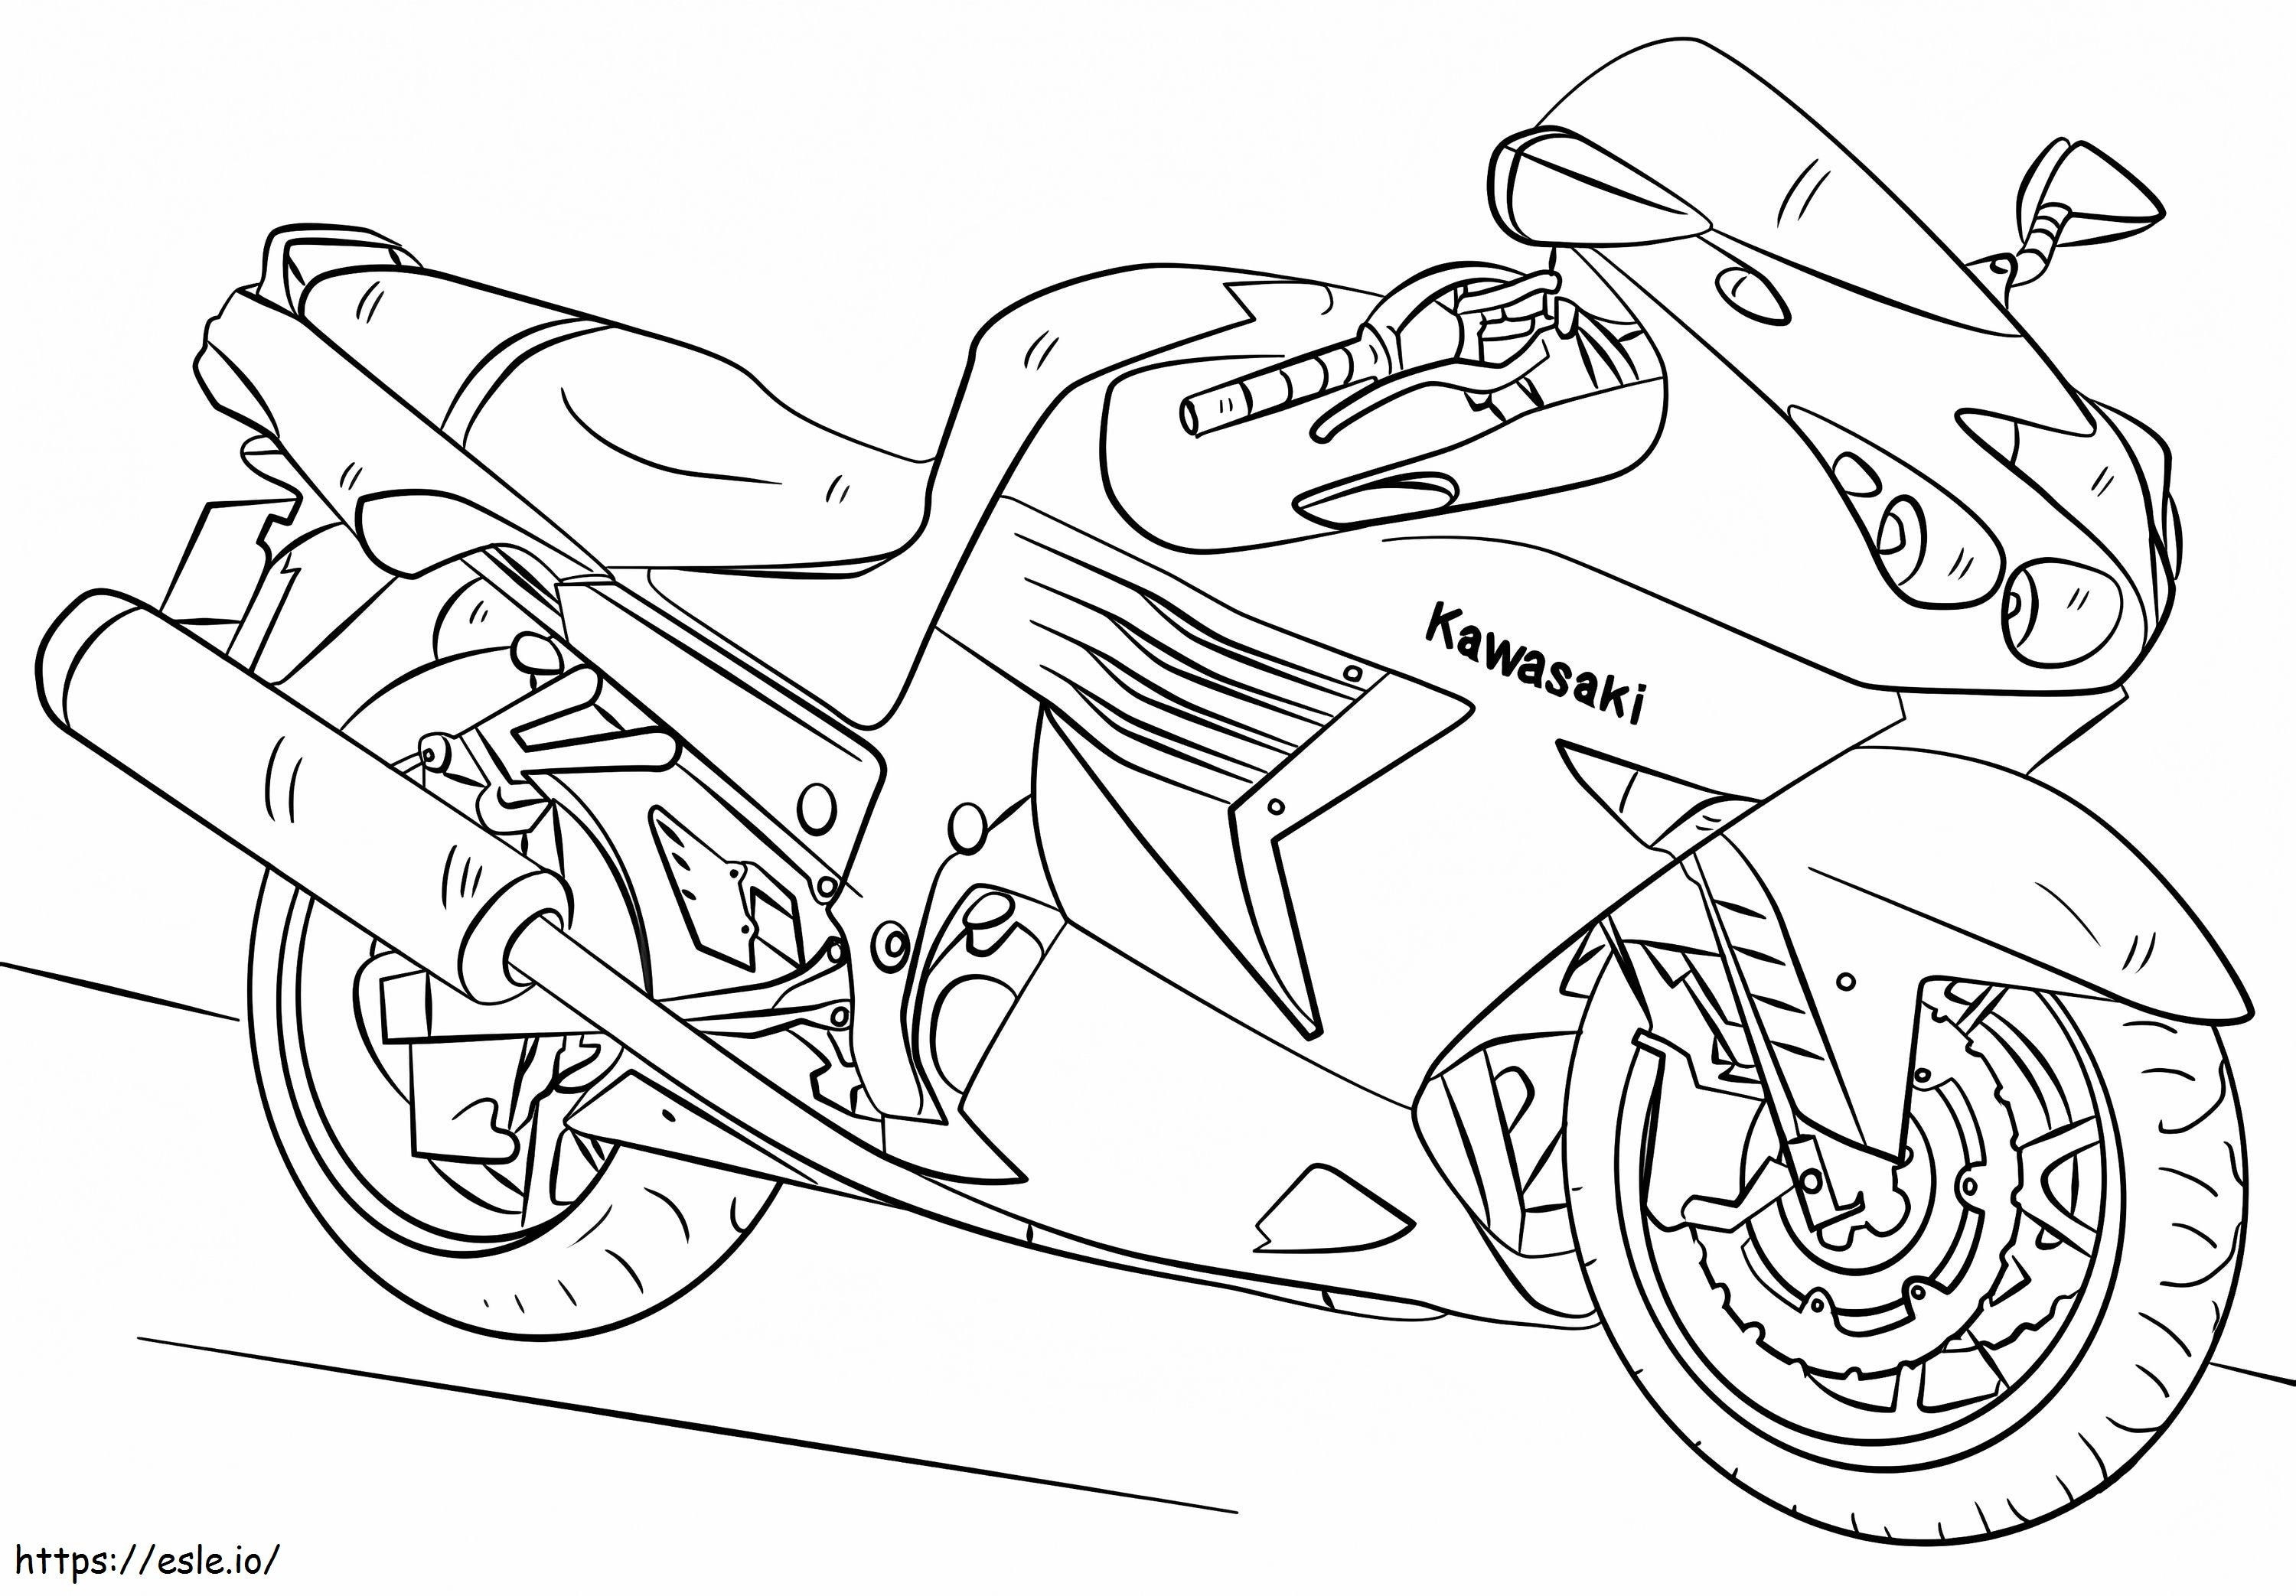 Motocykl Kawasaki 1024X712 kolorowanka